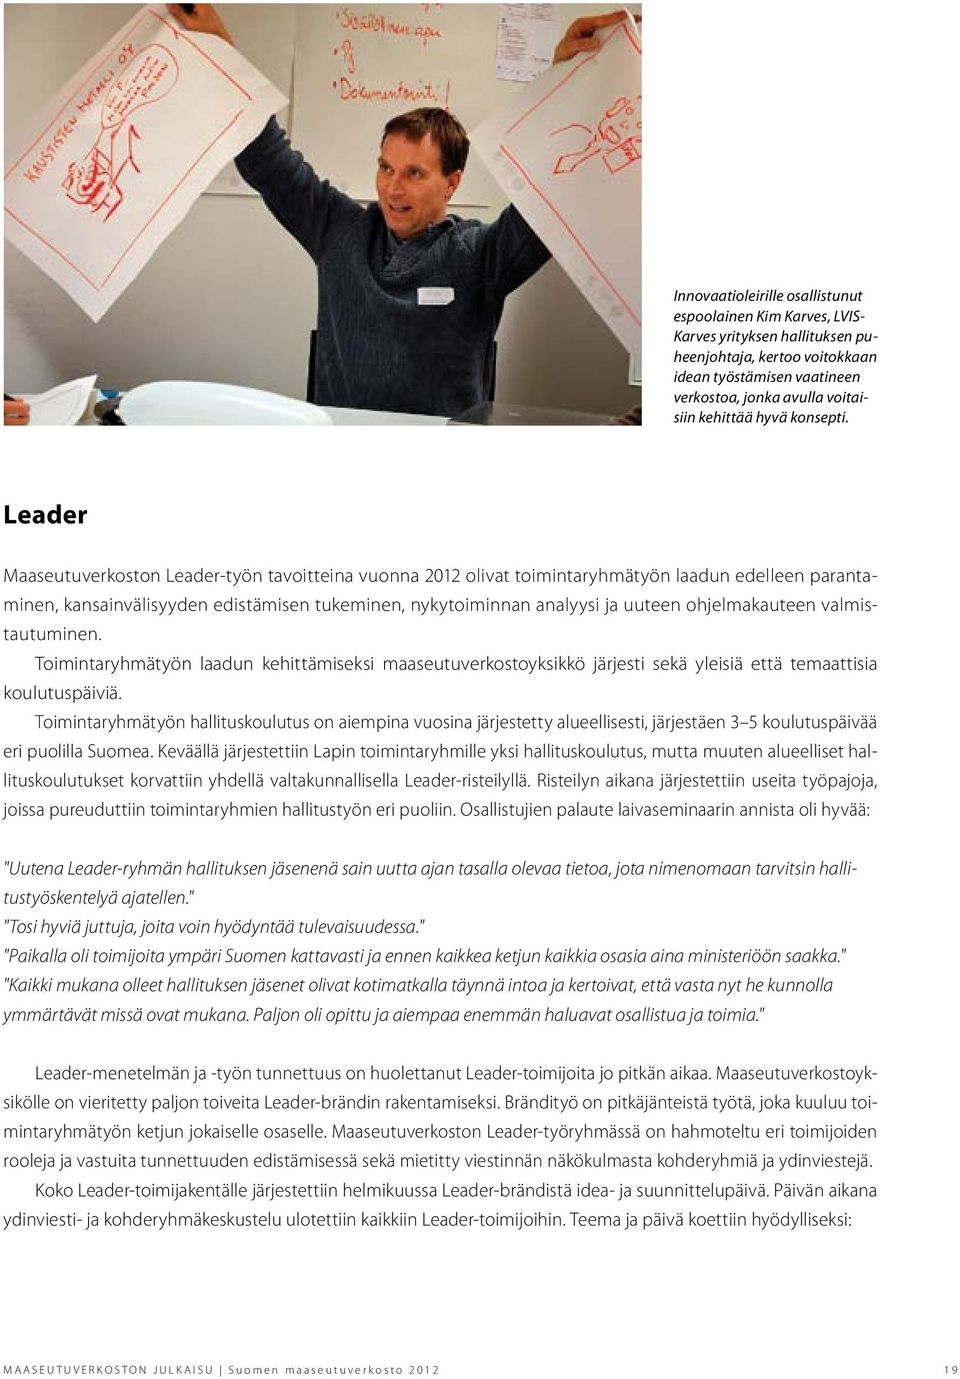 Leader Maaseutuverkoston Leader-työn tavoitteina vuonna 2012 olivat toimintaryhmätyön laadun edelleen parantaminen, kansainvälisyyden edistämisen tukeminen, nykytoiminnan analyysi ja uuteen